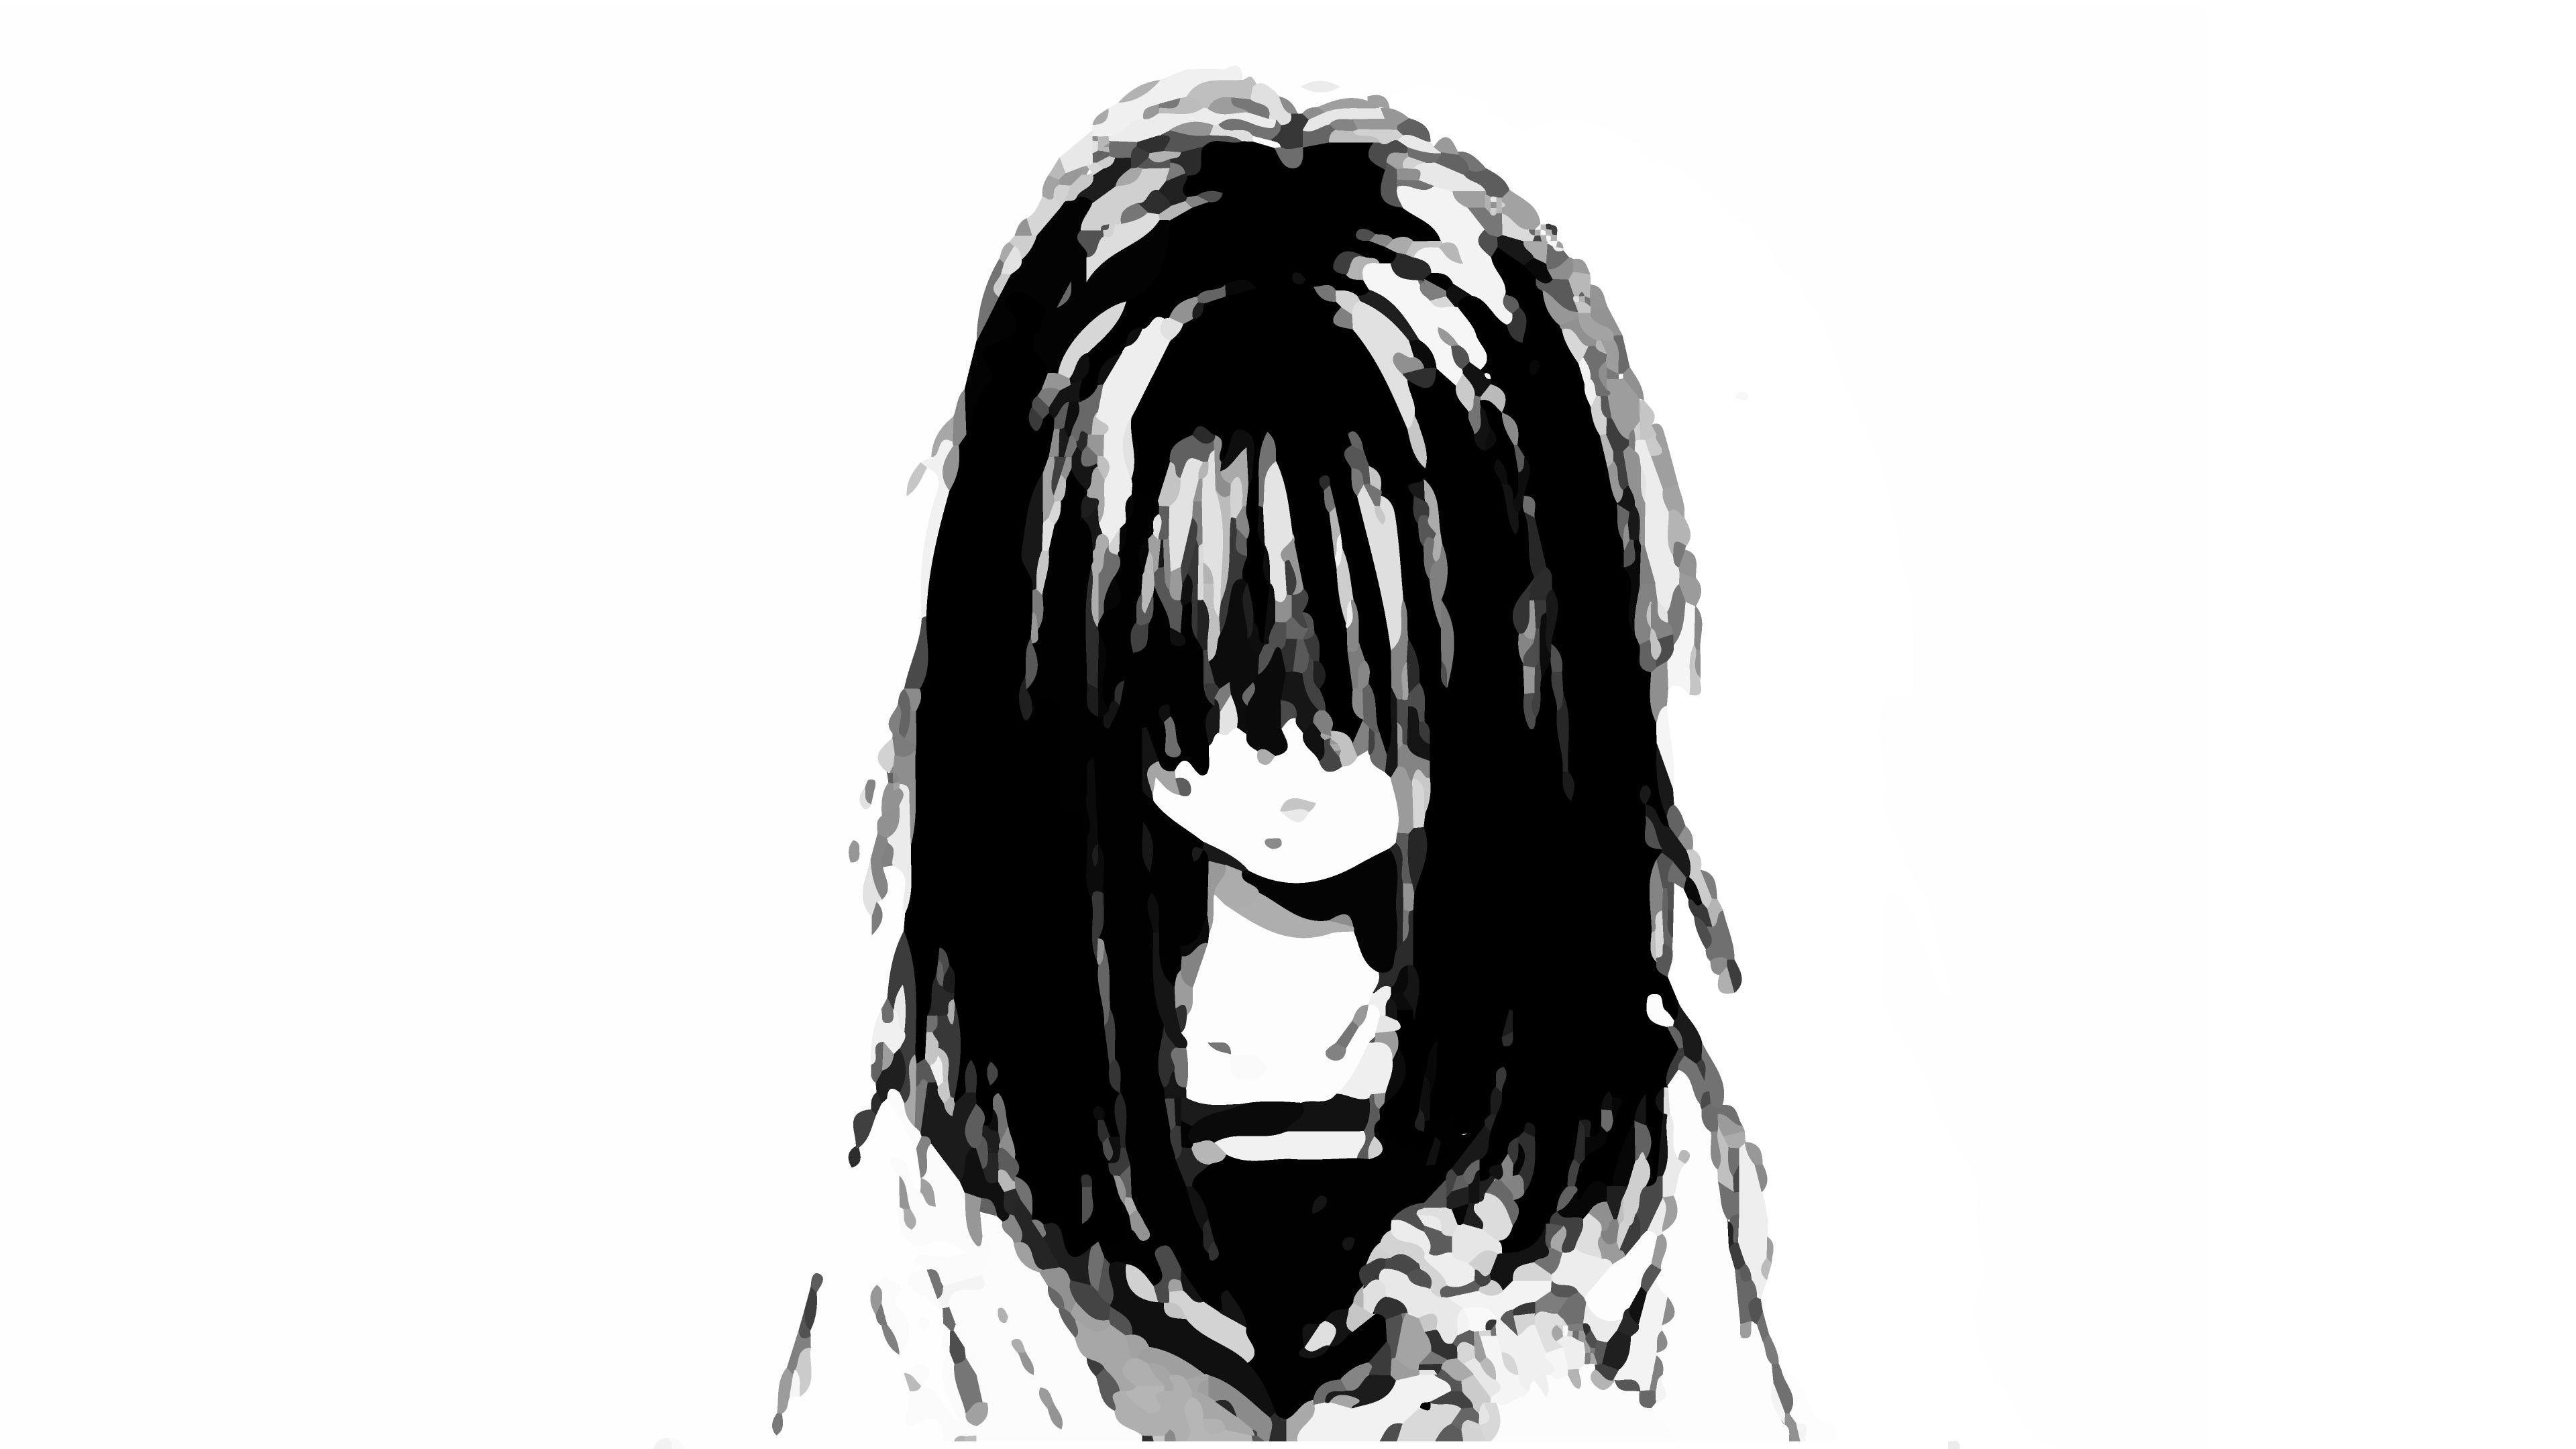 3840x2160 Tải xuống miễn phí 87 Hình nền Anime buồn [3840x2160] cho Máy tính để bàn, Di động & Máy tính bảng của bạn.  Khám phá Hình nền Anime Girl Crying.  Anime Girl Crying Wallpaper, Girl Crying Wallpaper, Anime Girl Wallpaper